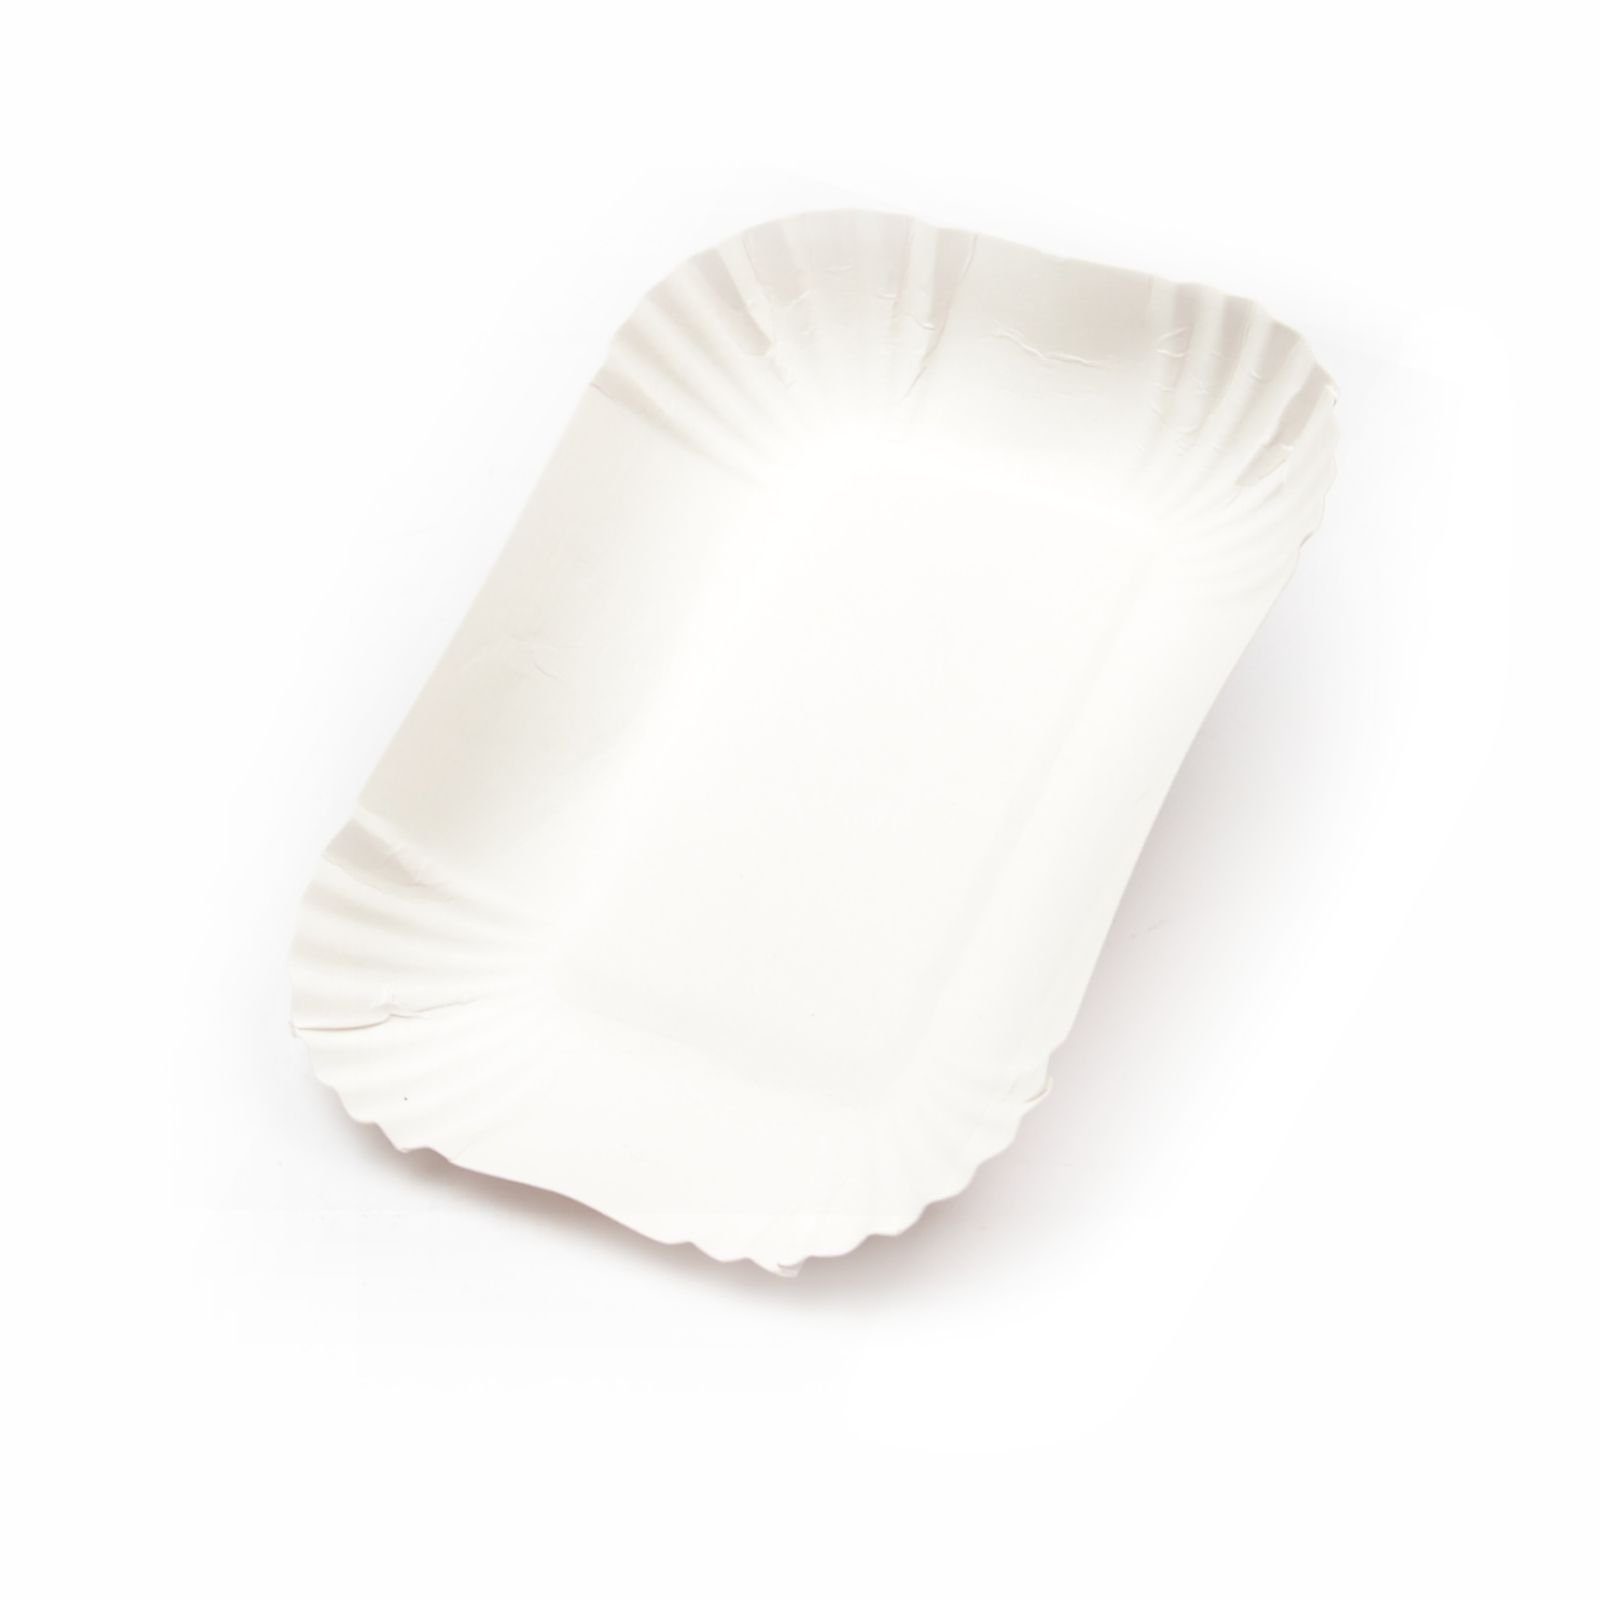 Einwegschale 250 Stück Pappschalen KU41 (13×17,5×3 cm), ohne Beschichtung, weiß, Frischfaser Pommesschale Pappteller Currywurstschale Pommes - Schale